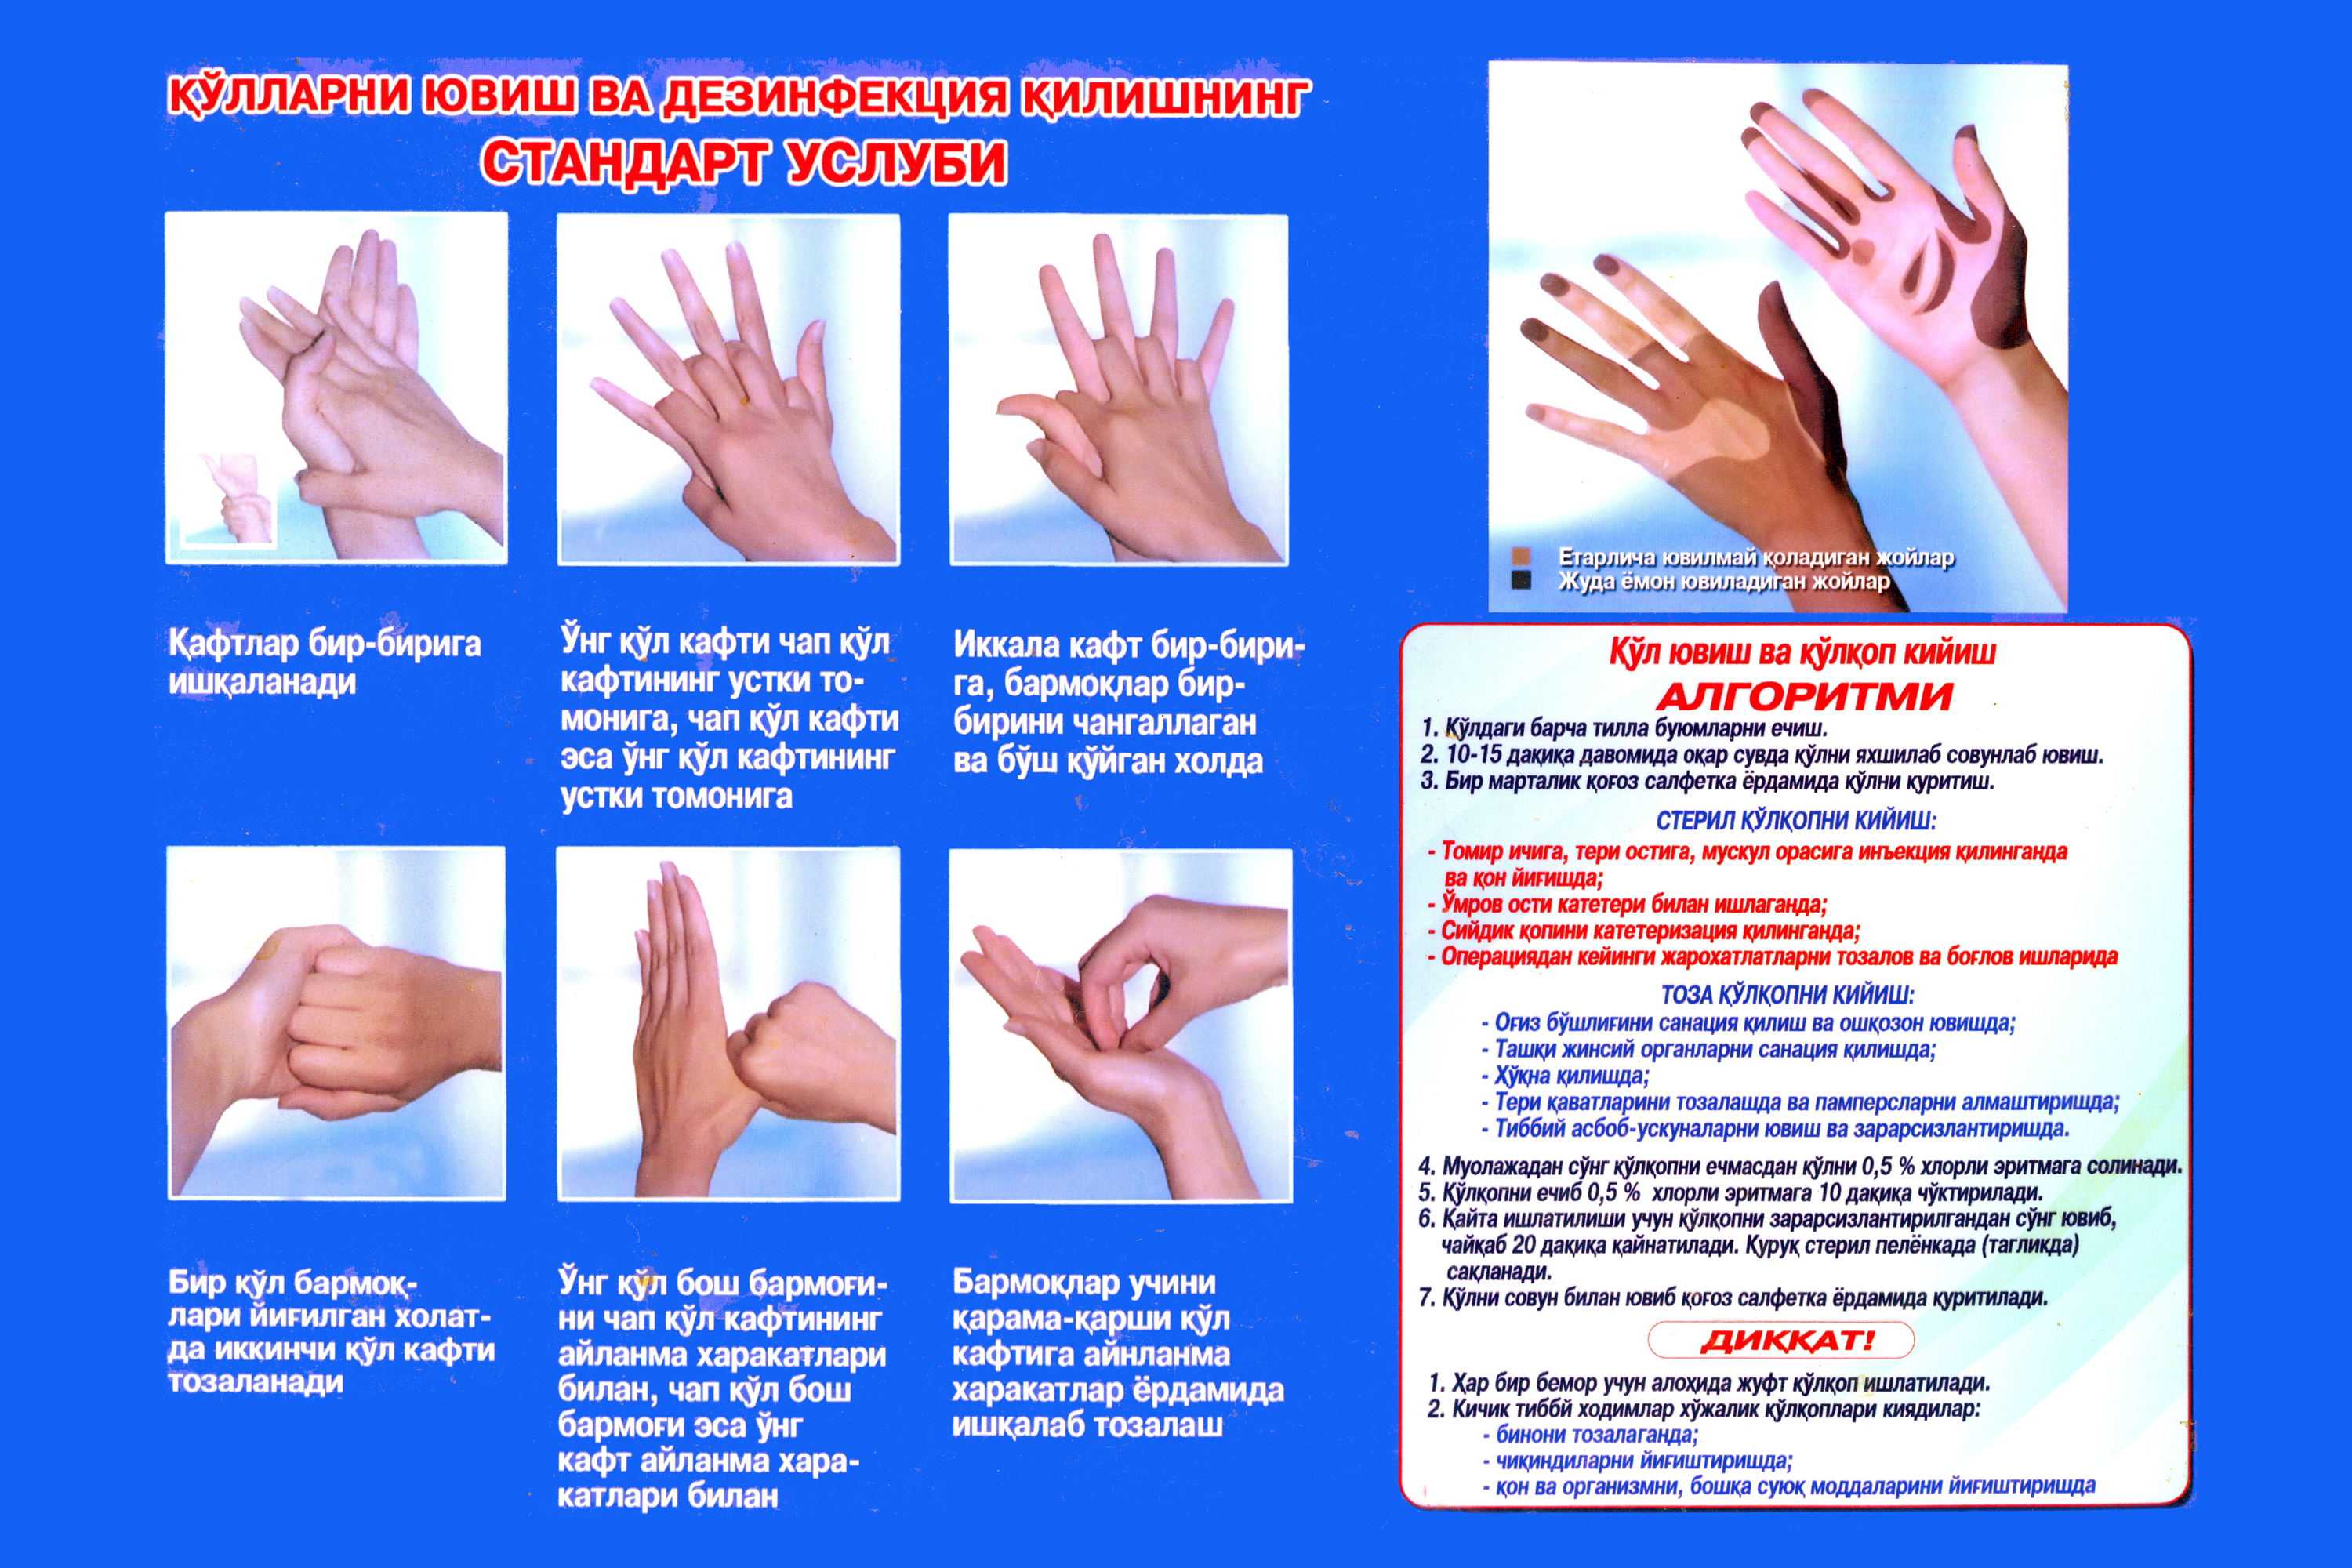 Ответы на тест гигиена рук медицинского. Гигиеническая обработка рук. Мытье рук медицинского персонала. Техника обработки рук. Гигиена антисептика рук.